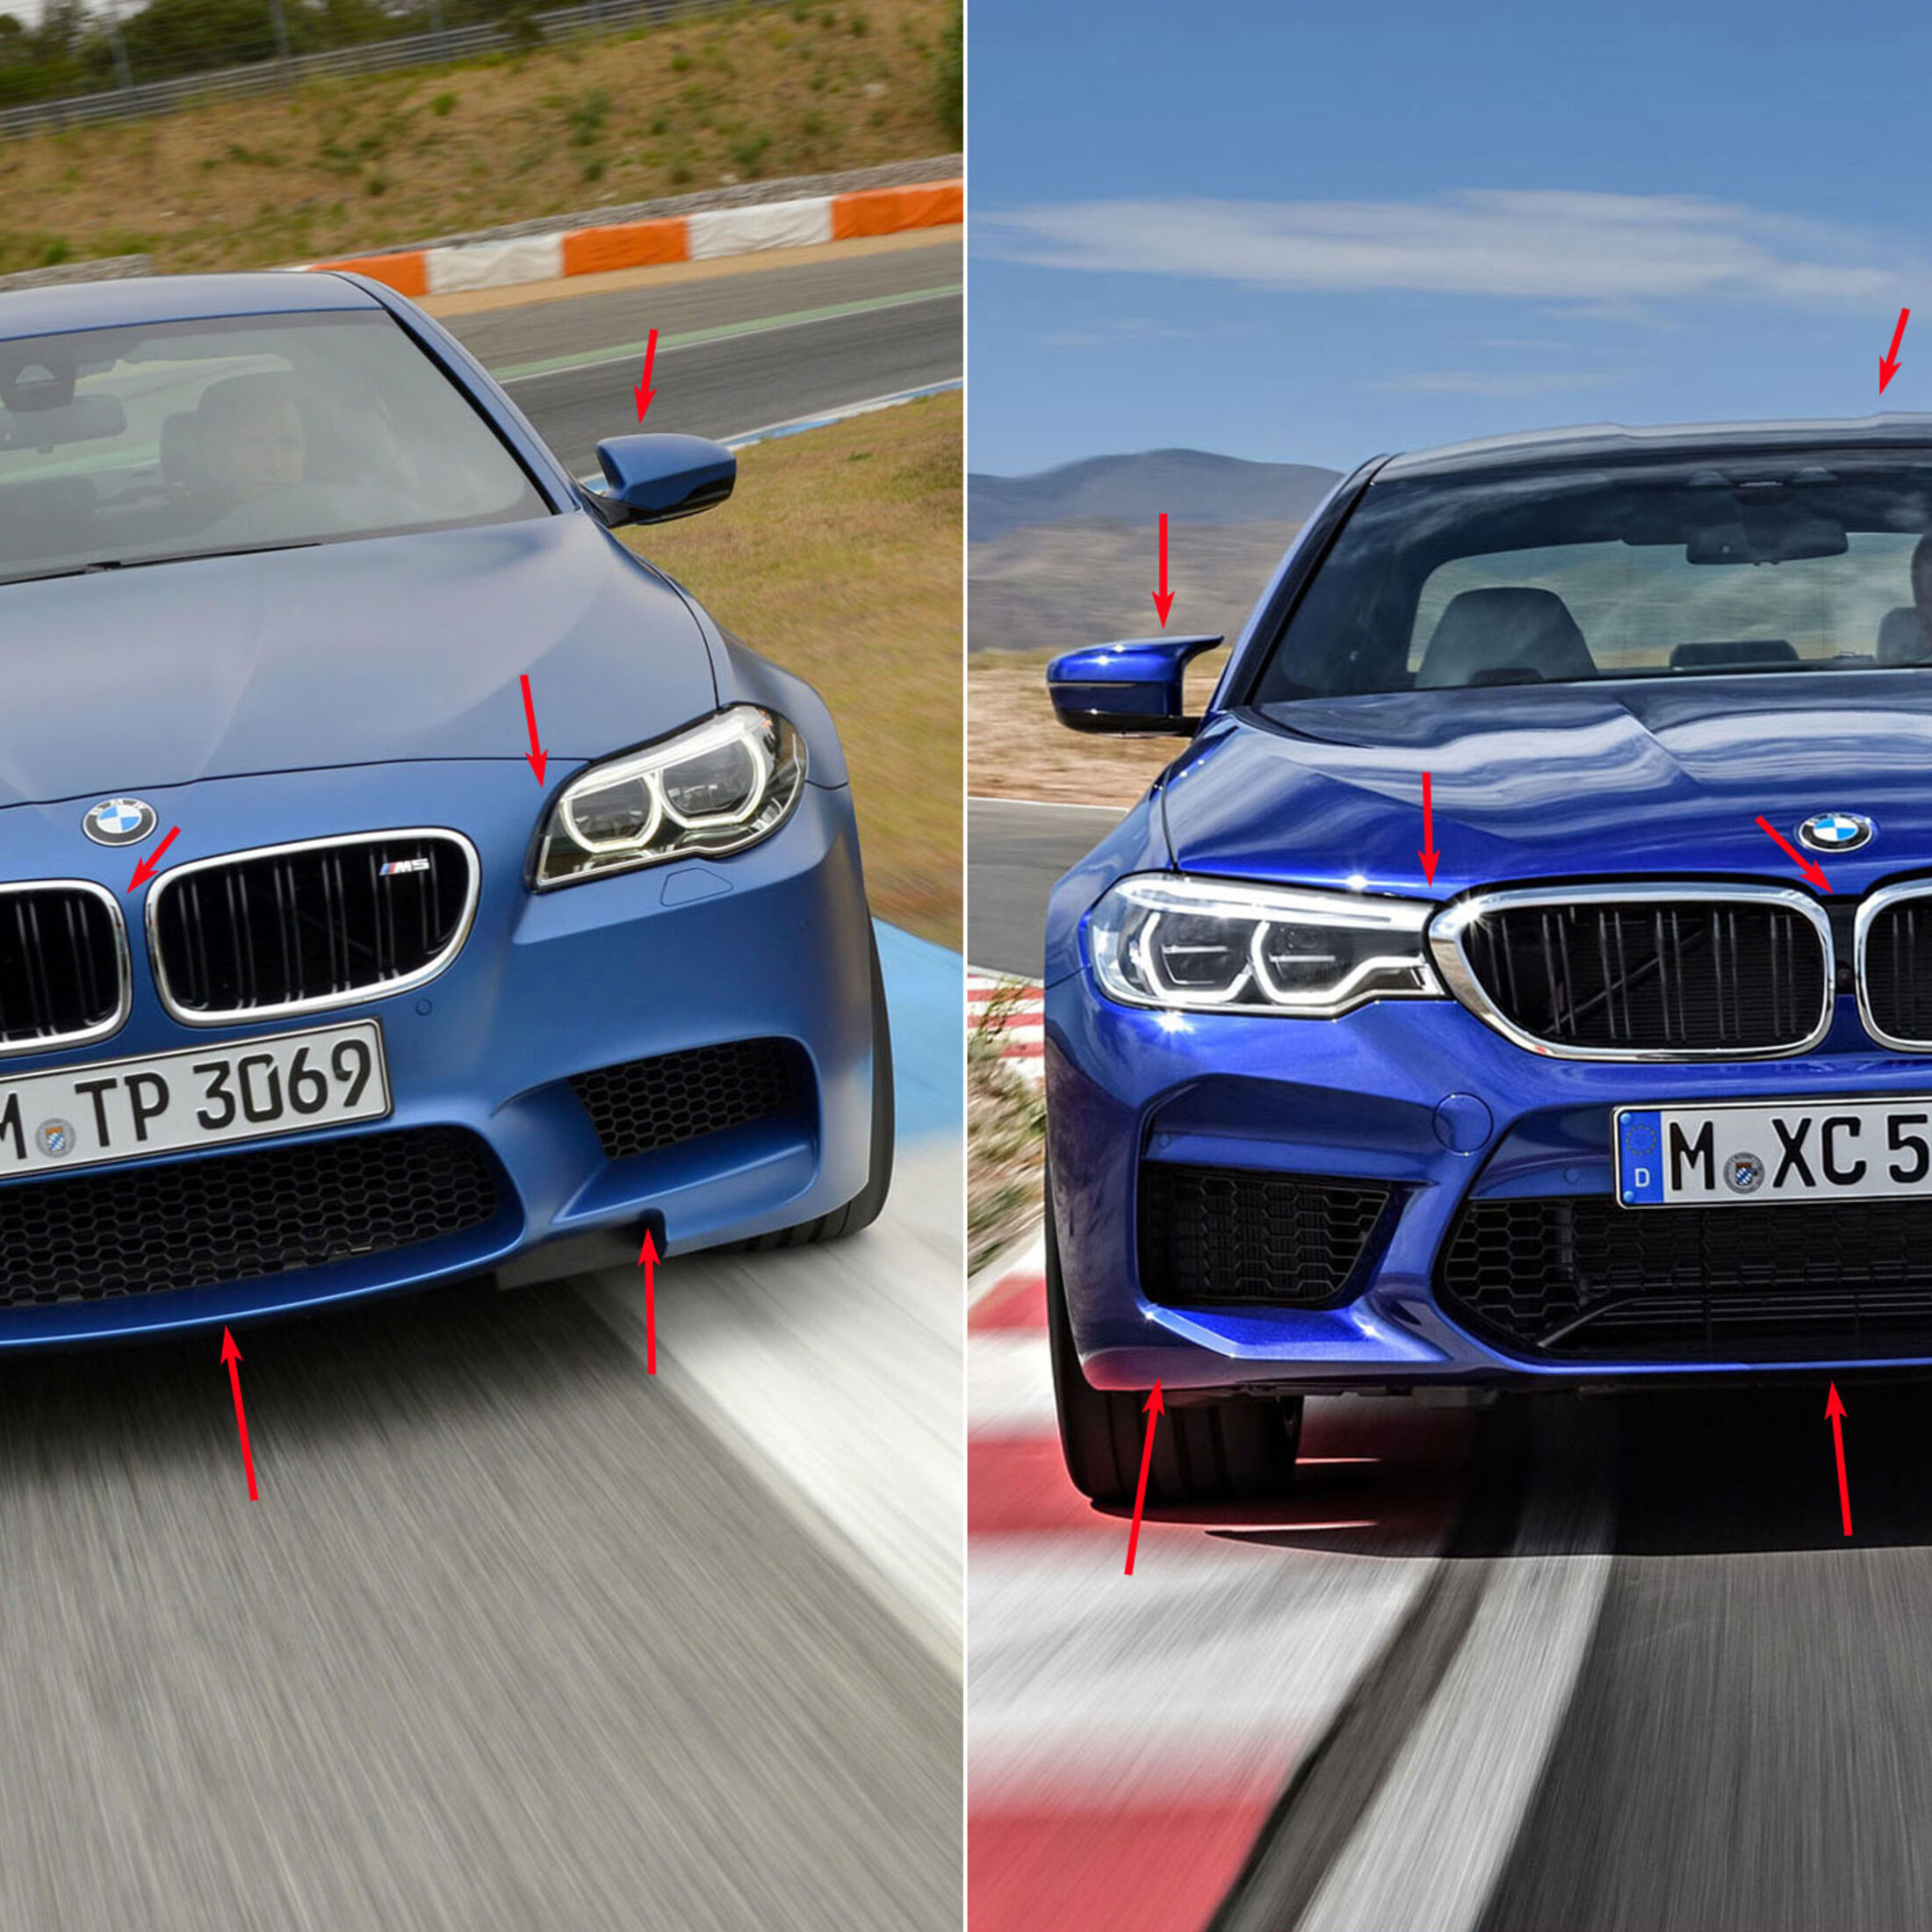 https://imgr1.auto-motor-und-sport.de/BMW-M5-F10-Competition-Paket-2013-BMW-M5-F90-Vergleich-jsonLd1x1-adda02f6-1112726.jpg